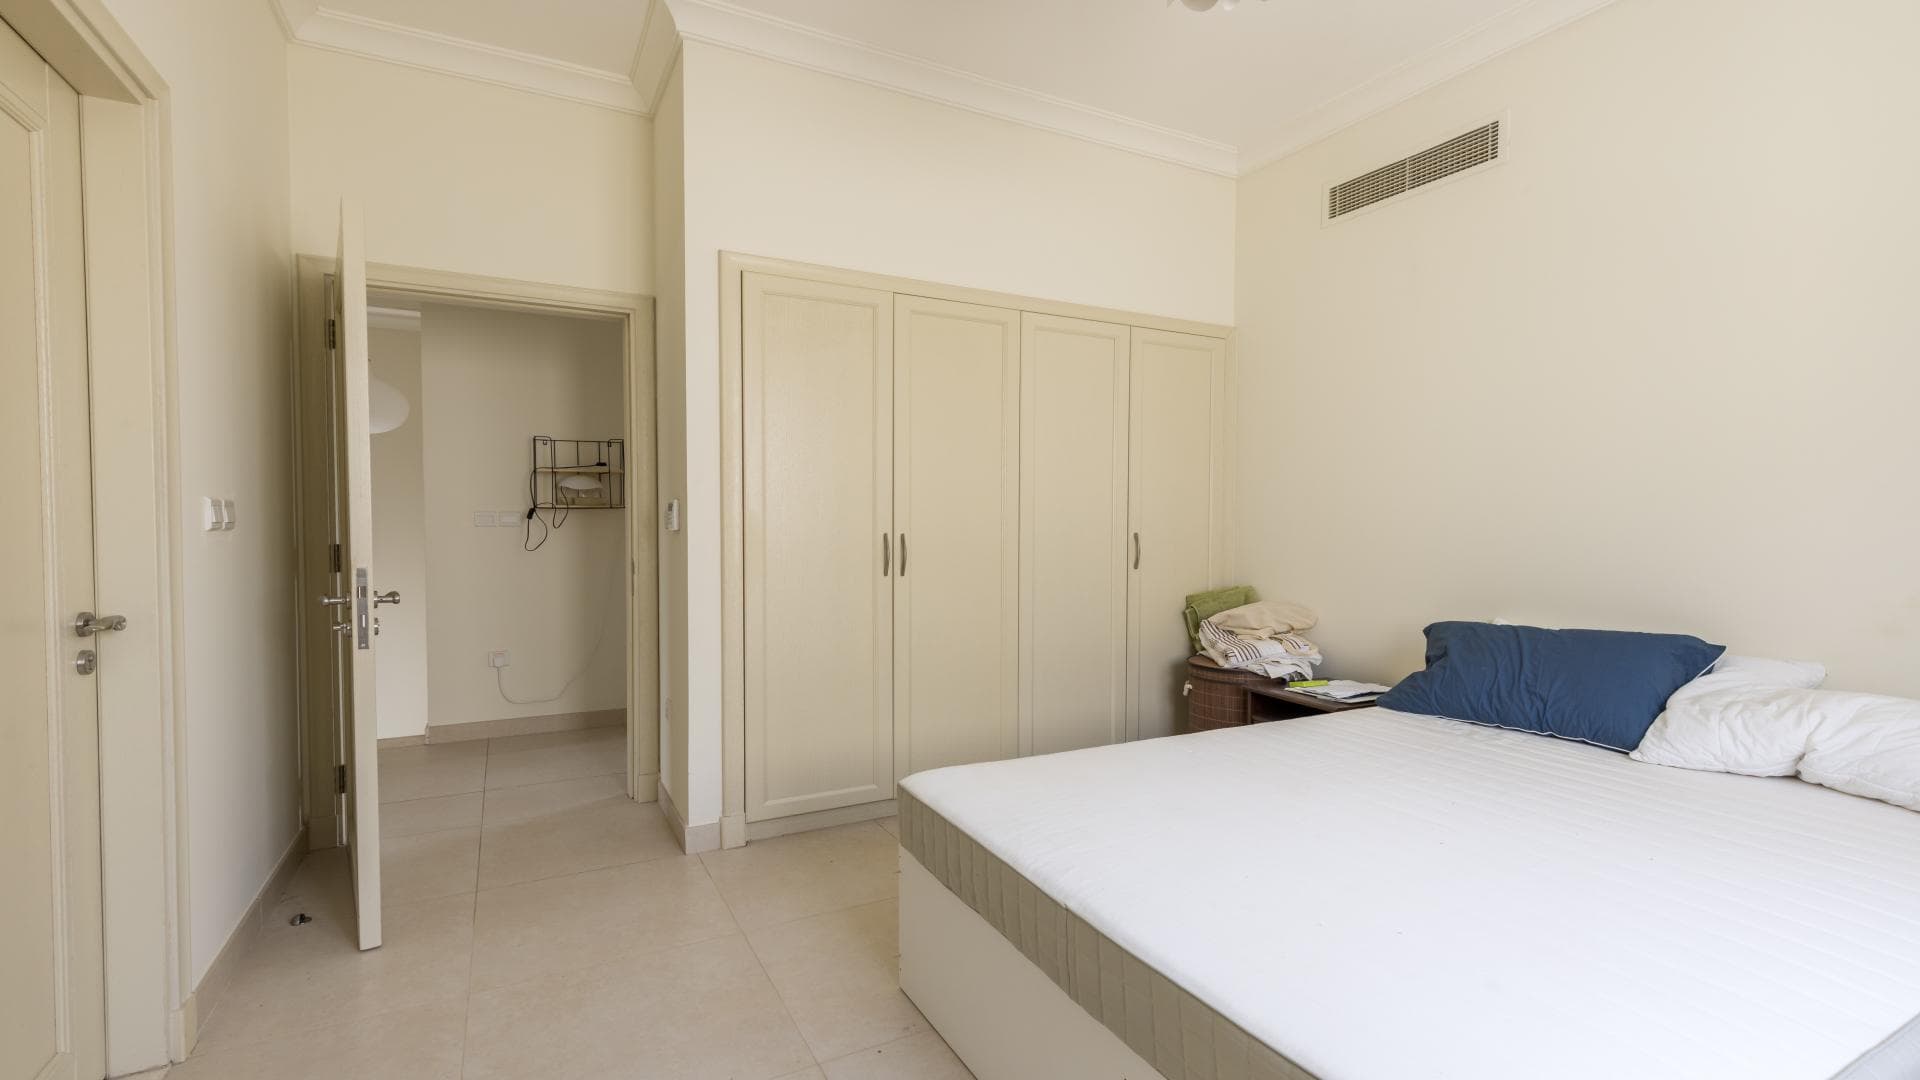 5 Bedroom Villa For Rent Palma Lp14457 287fda0eb722de00.jpg